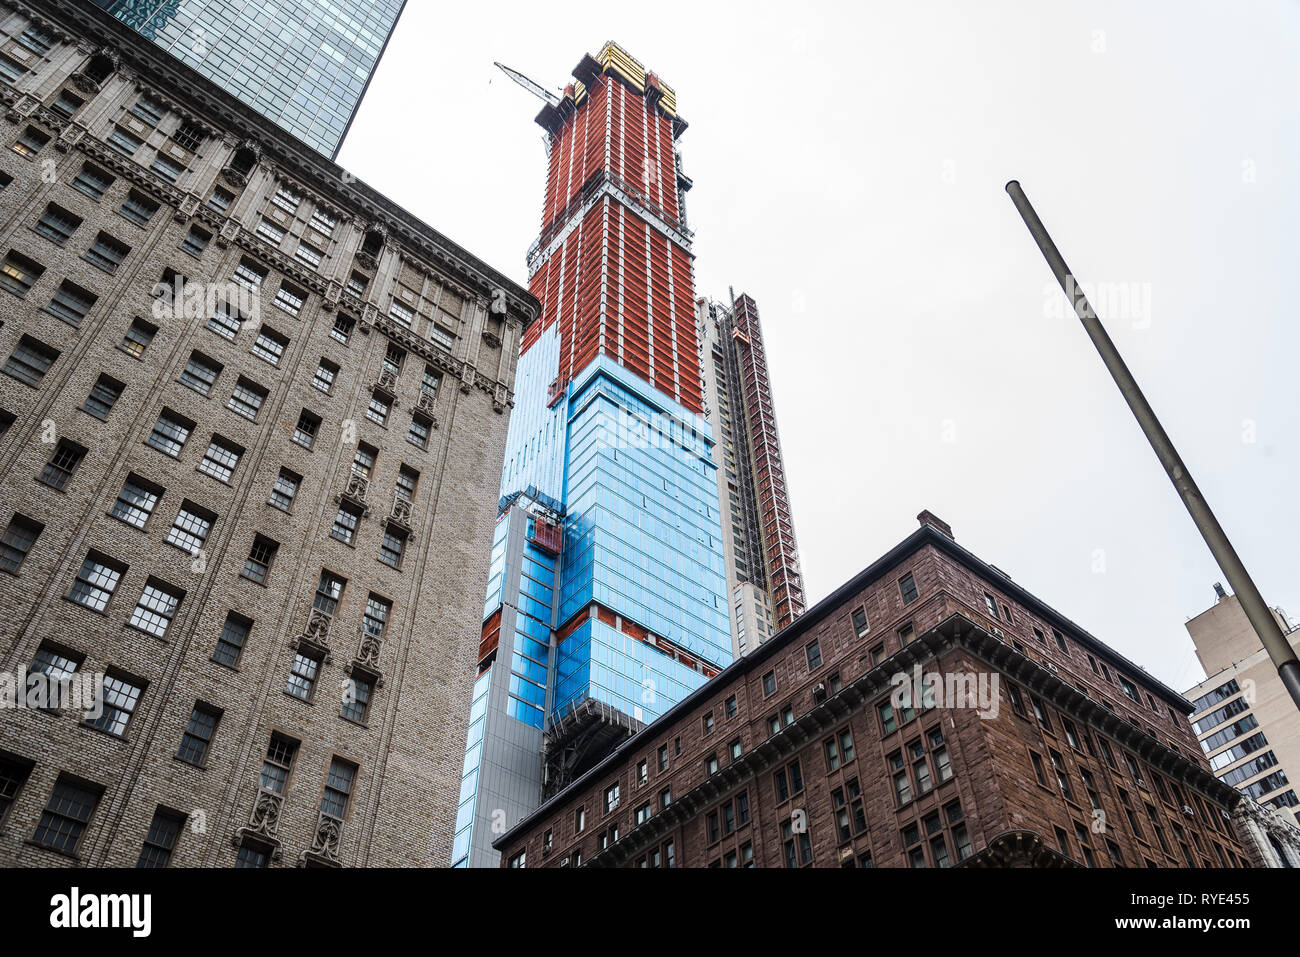 Basso angolo di visione degli edifici ed il grattacielo in costruzione a Manhattan, New York City Foto Stock